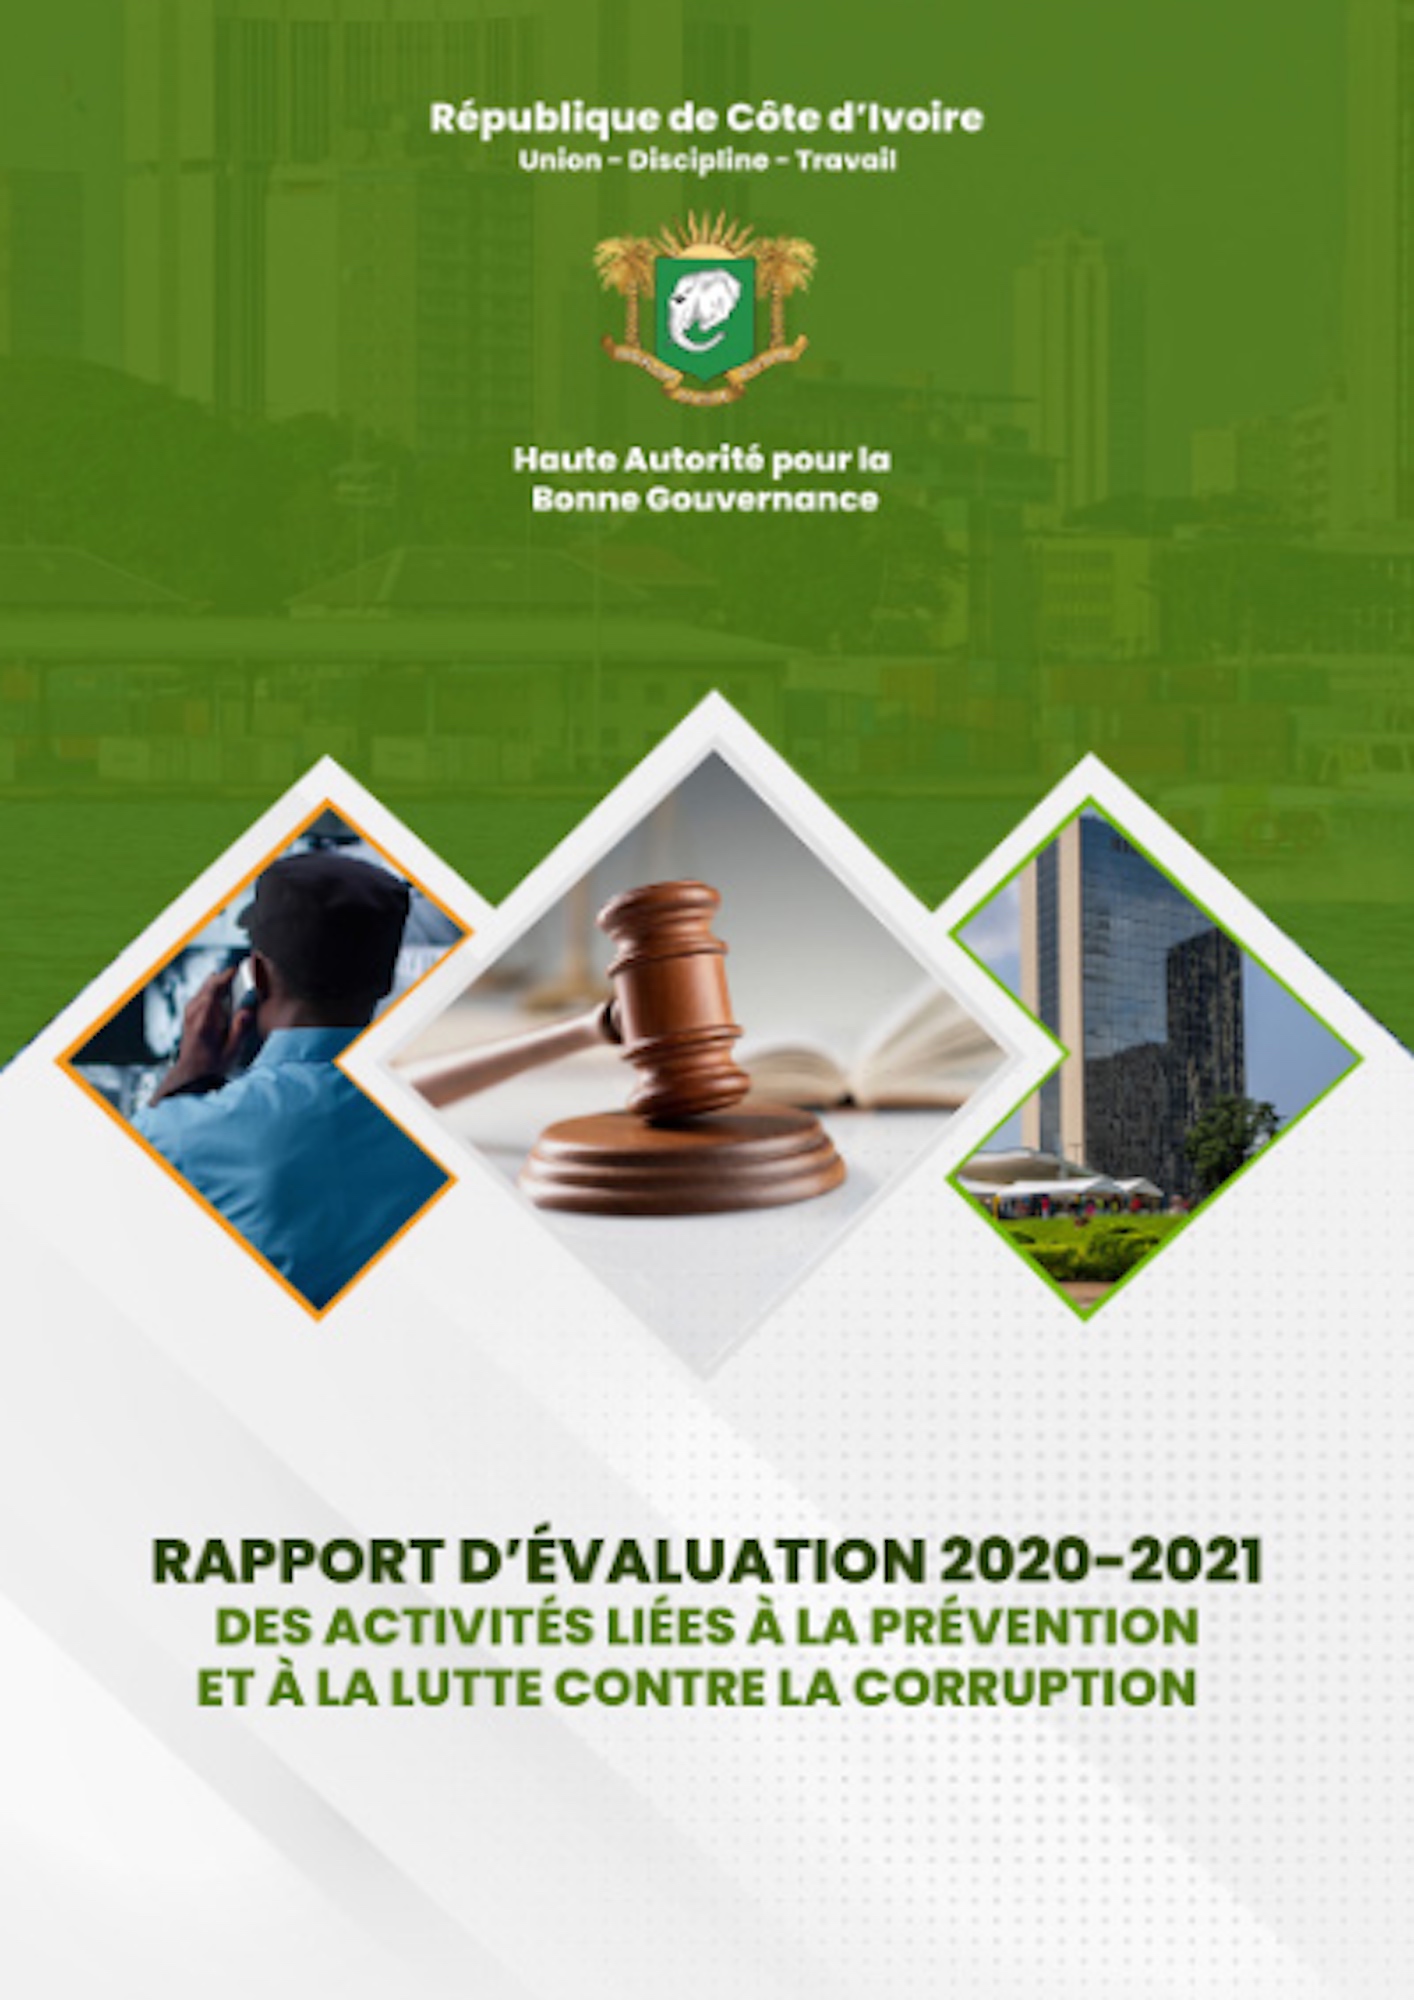 Rapport d'Evaluation de la HABG 2020-2021 des activités liées à la prévention et à la lutte contre la corruption